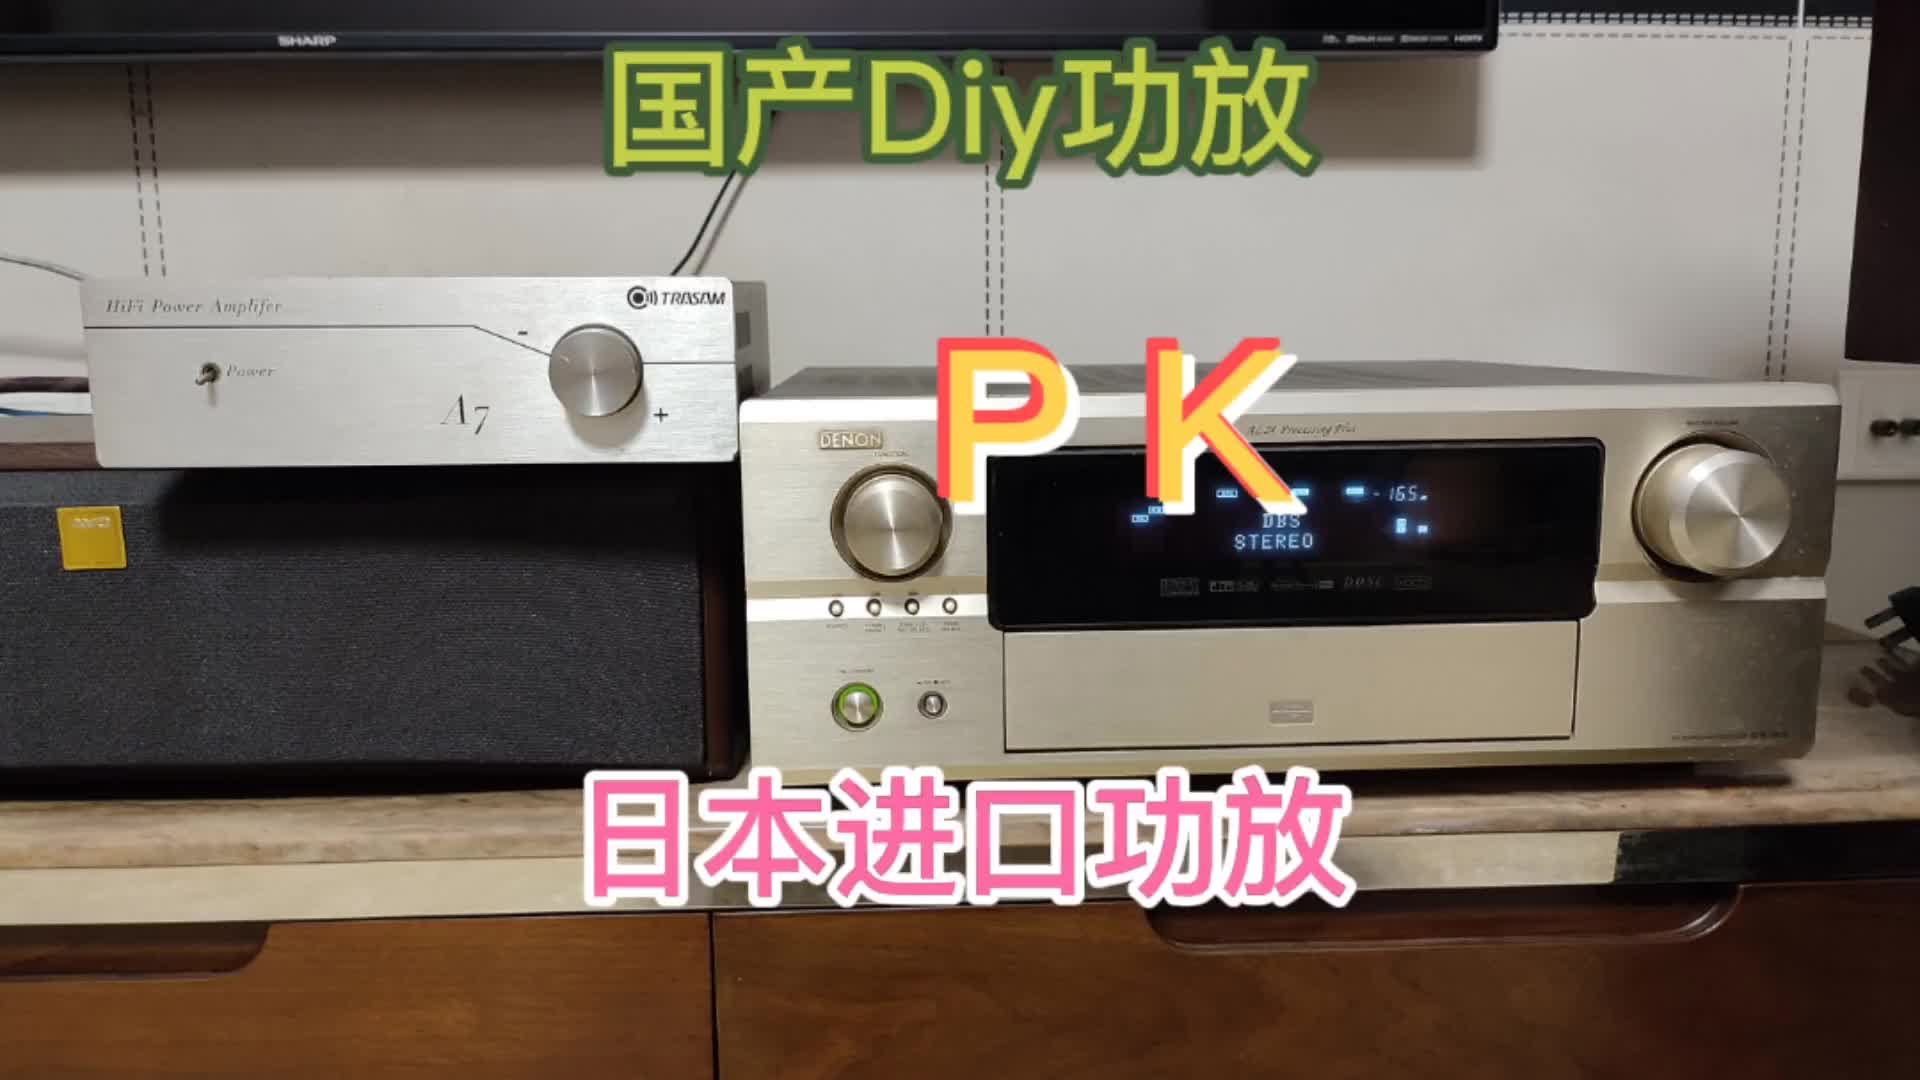 国产Diy功放PK日本原装进口功放，能听出区别的都是高手，敢试吗#硬声创作季 